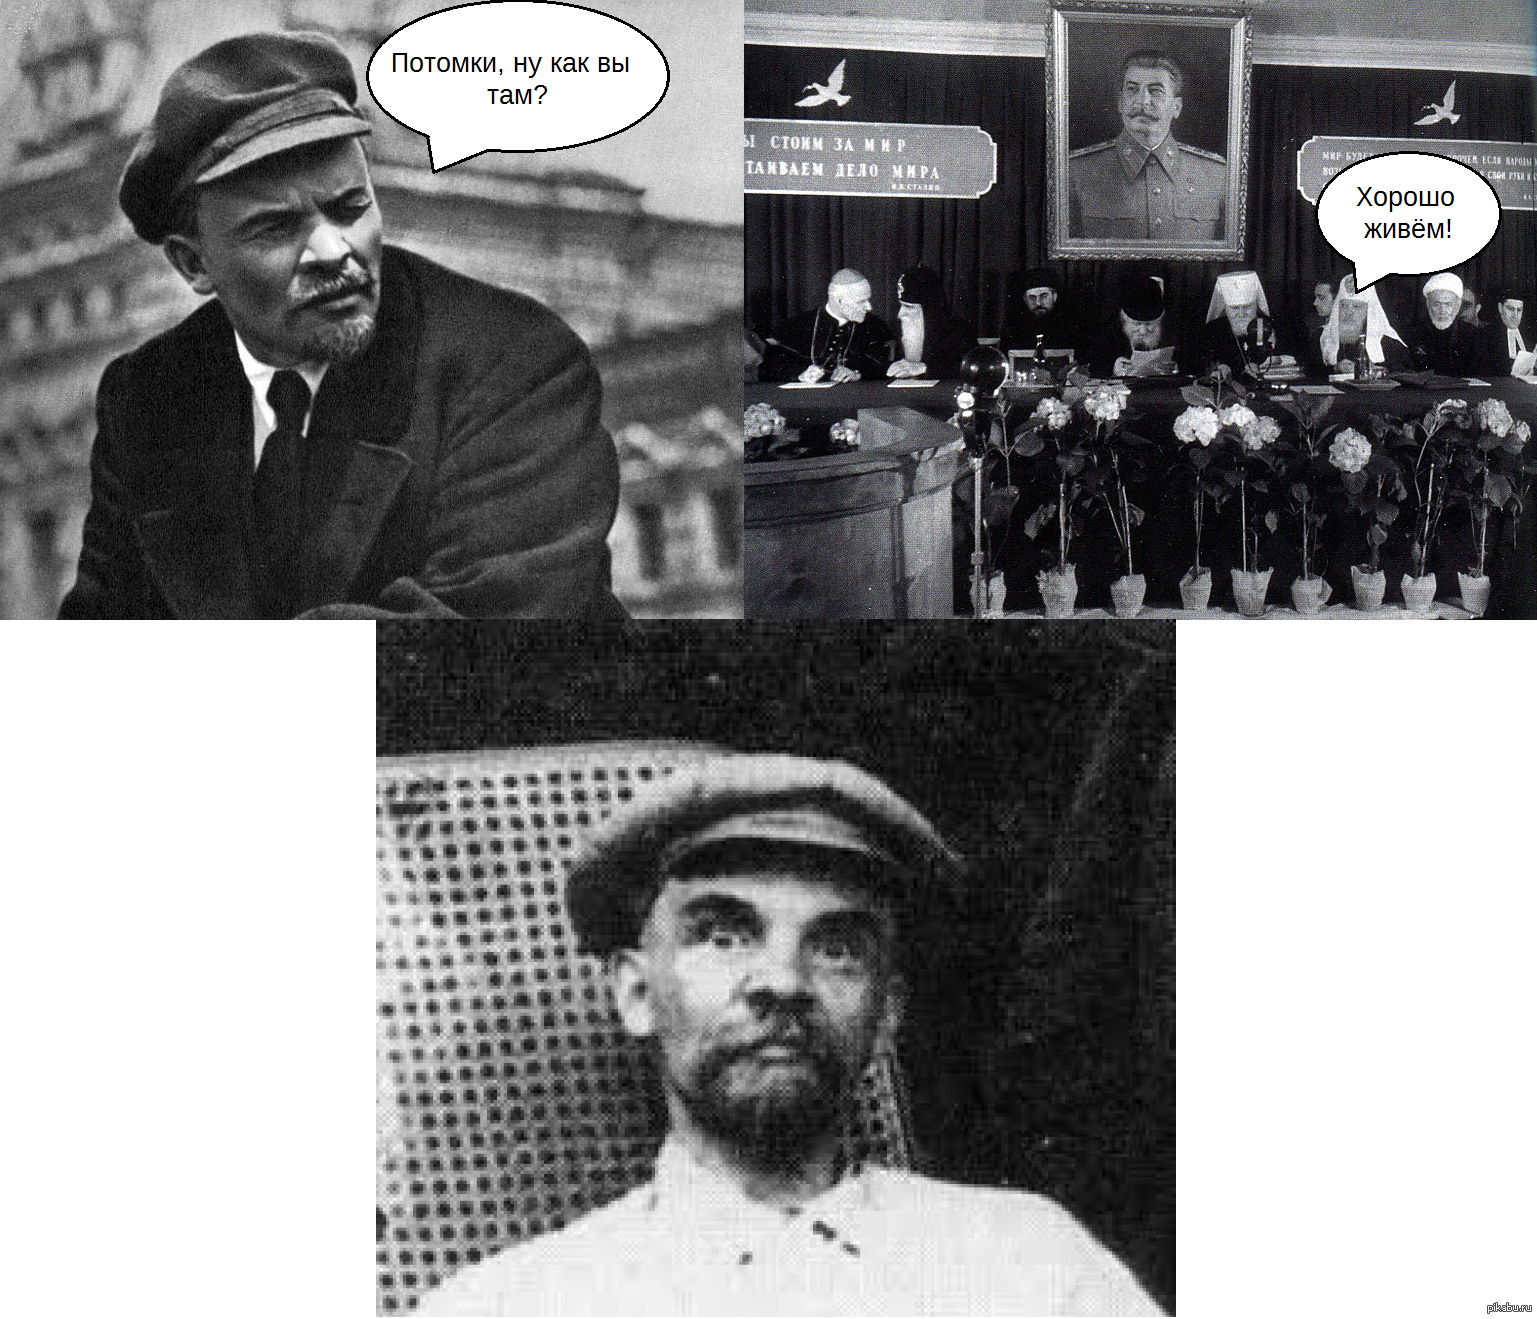 Ленин как вы там потомки